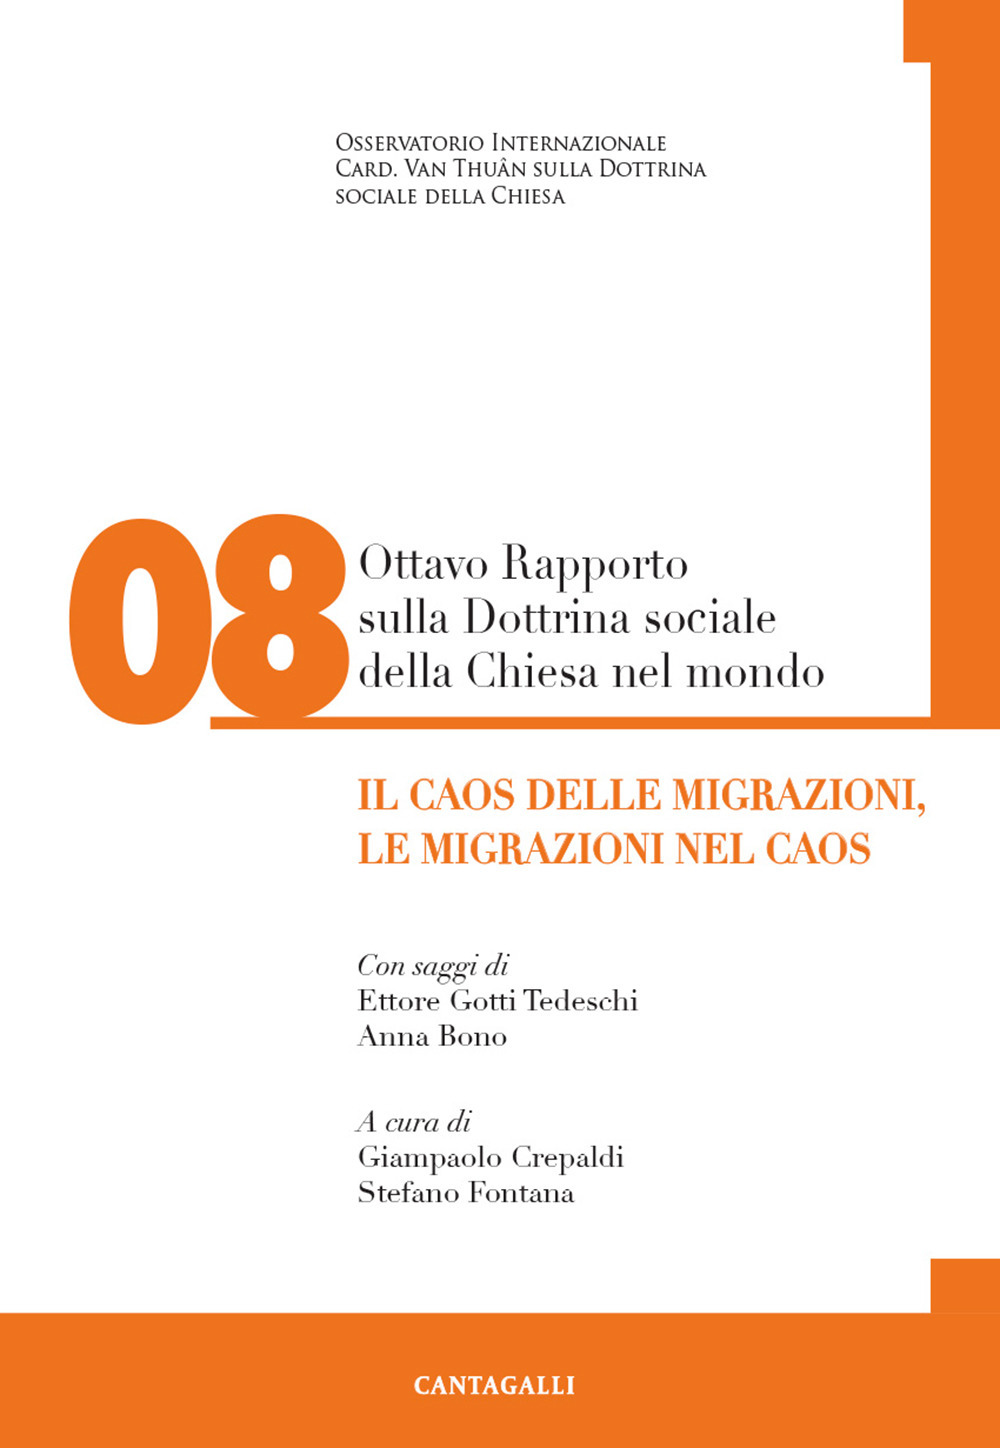 Image of Ottavo rapporto sulla dottrina sociale della Chiesa nel mondo. Vol. 8: caos delle migrazioni, le migrazioni nel caos, Il.